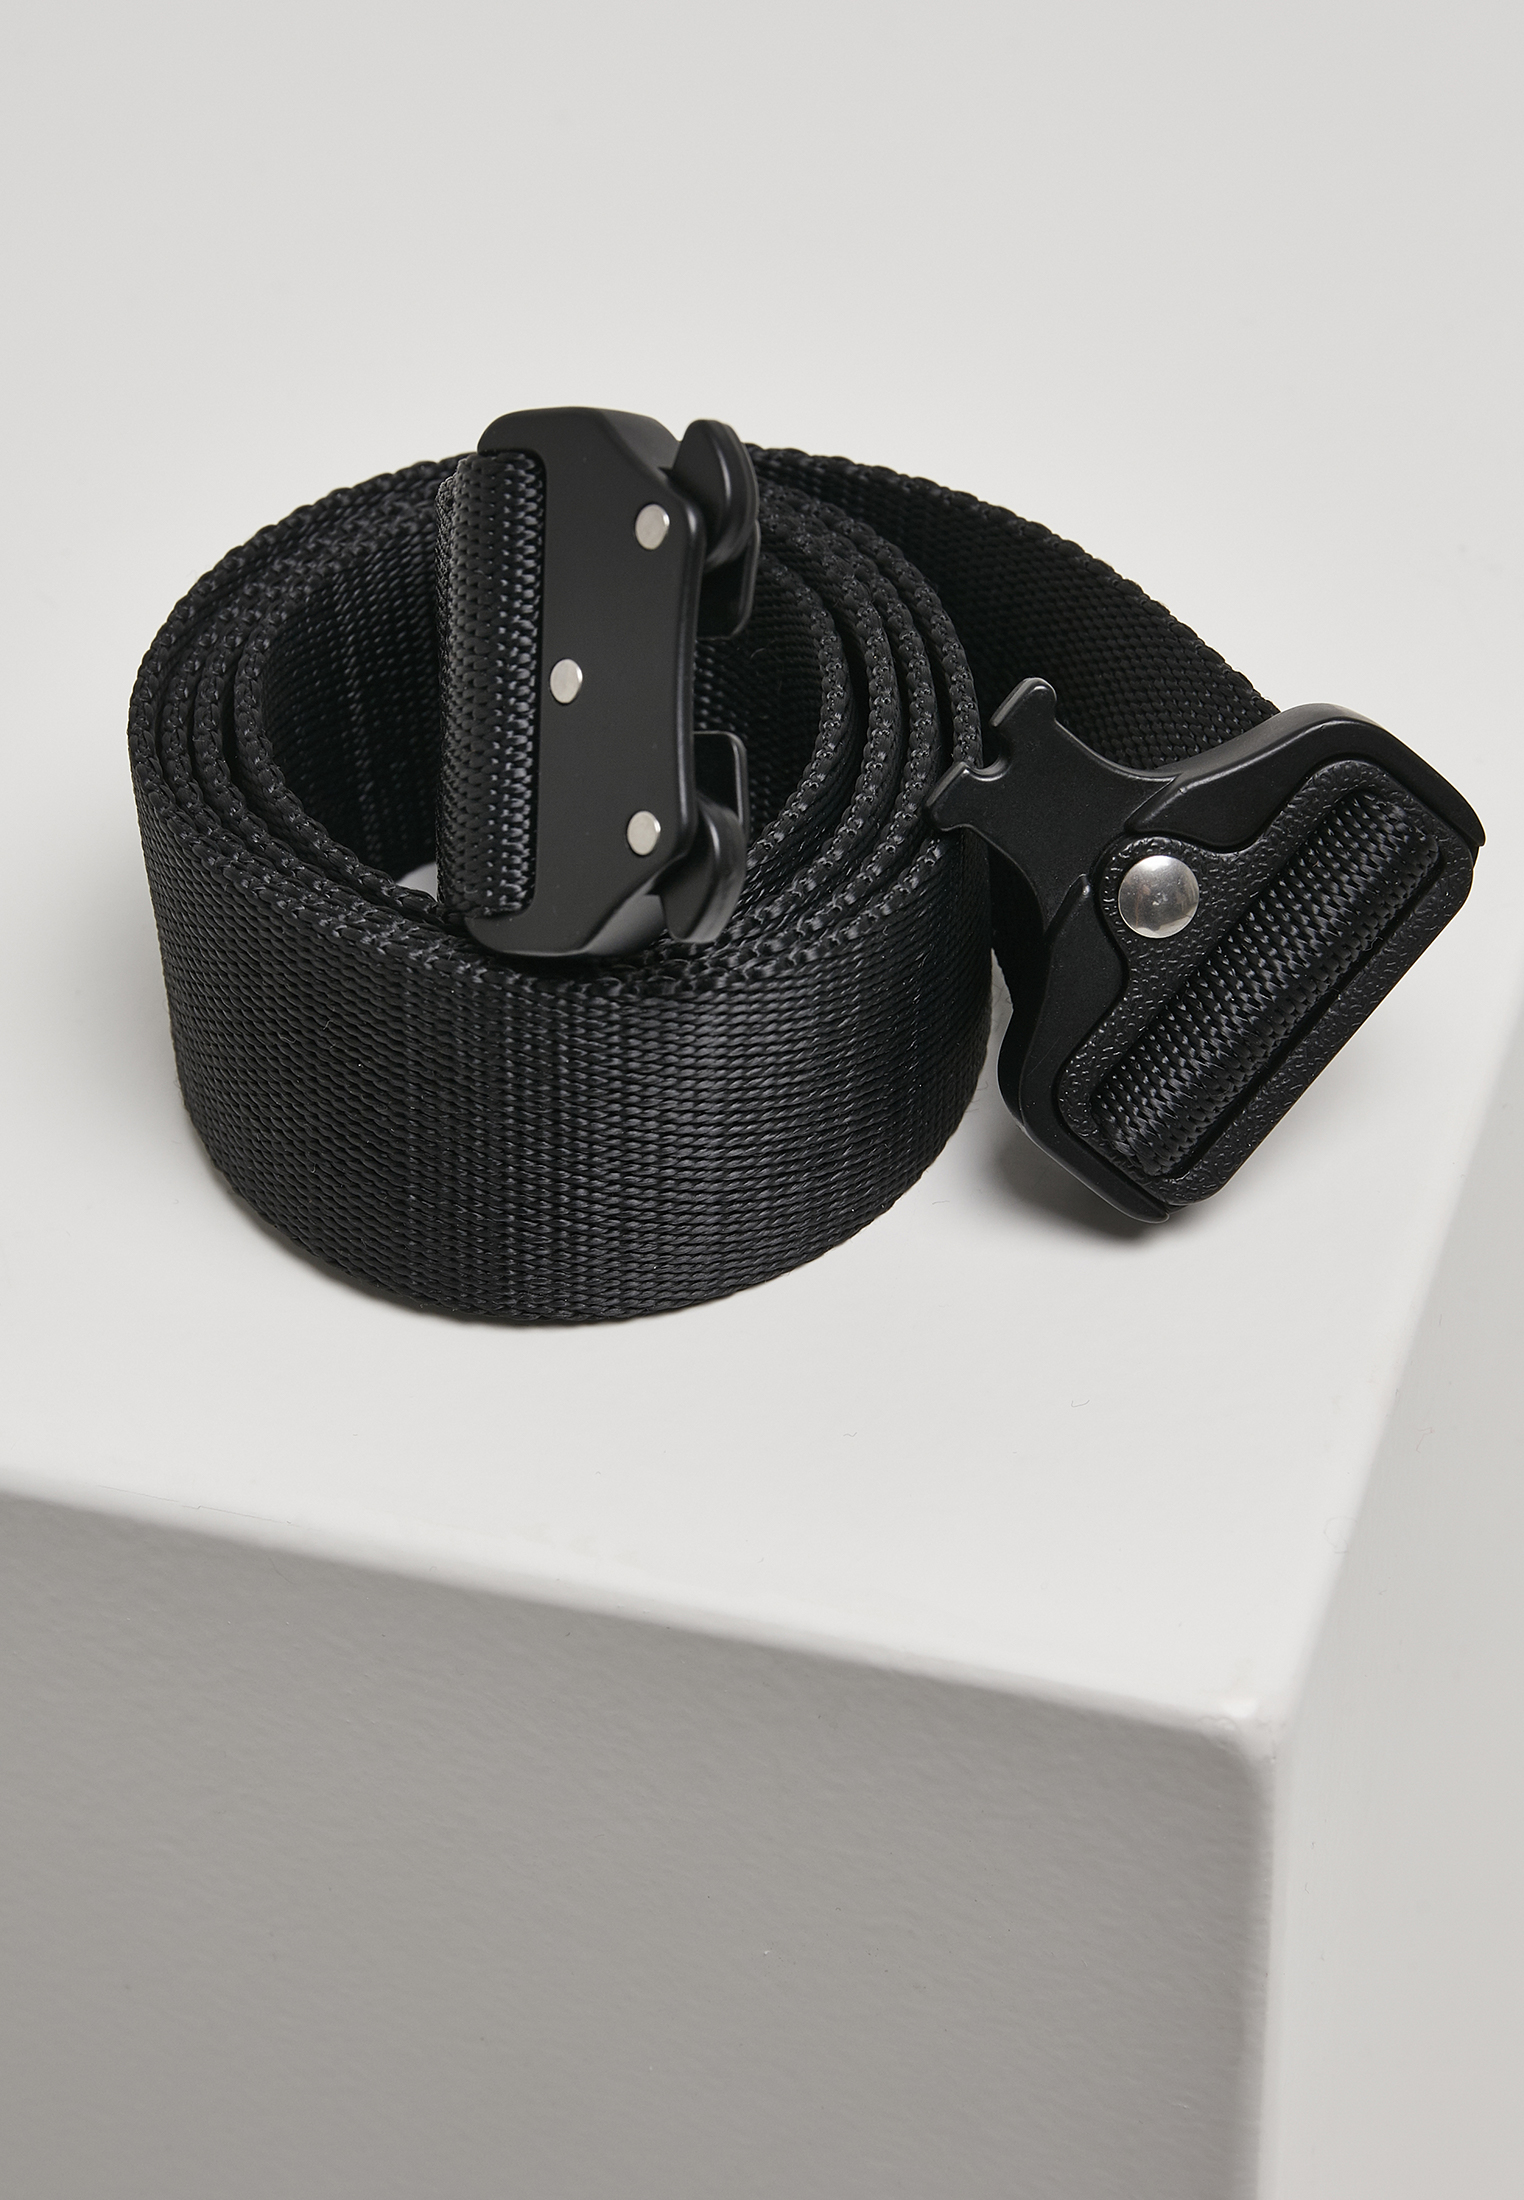 G?rtel Wing Buckle Belt in Farbe black